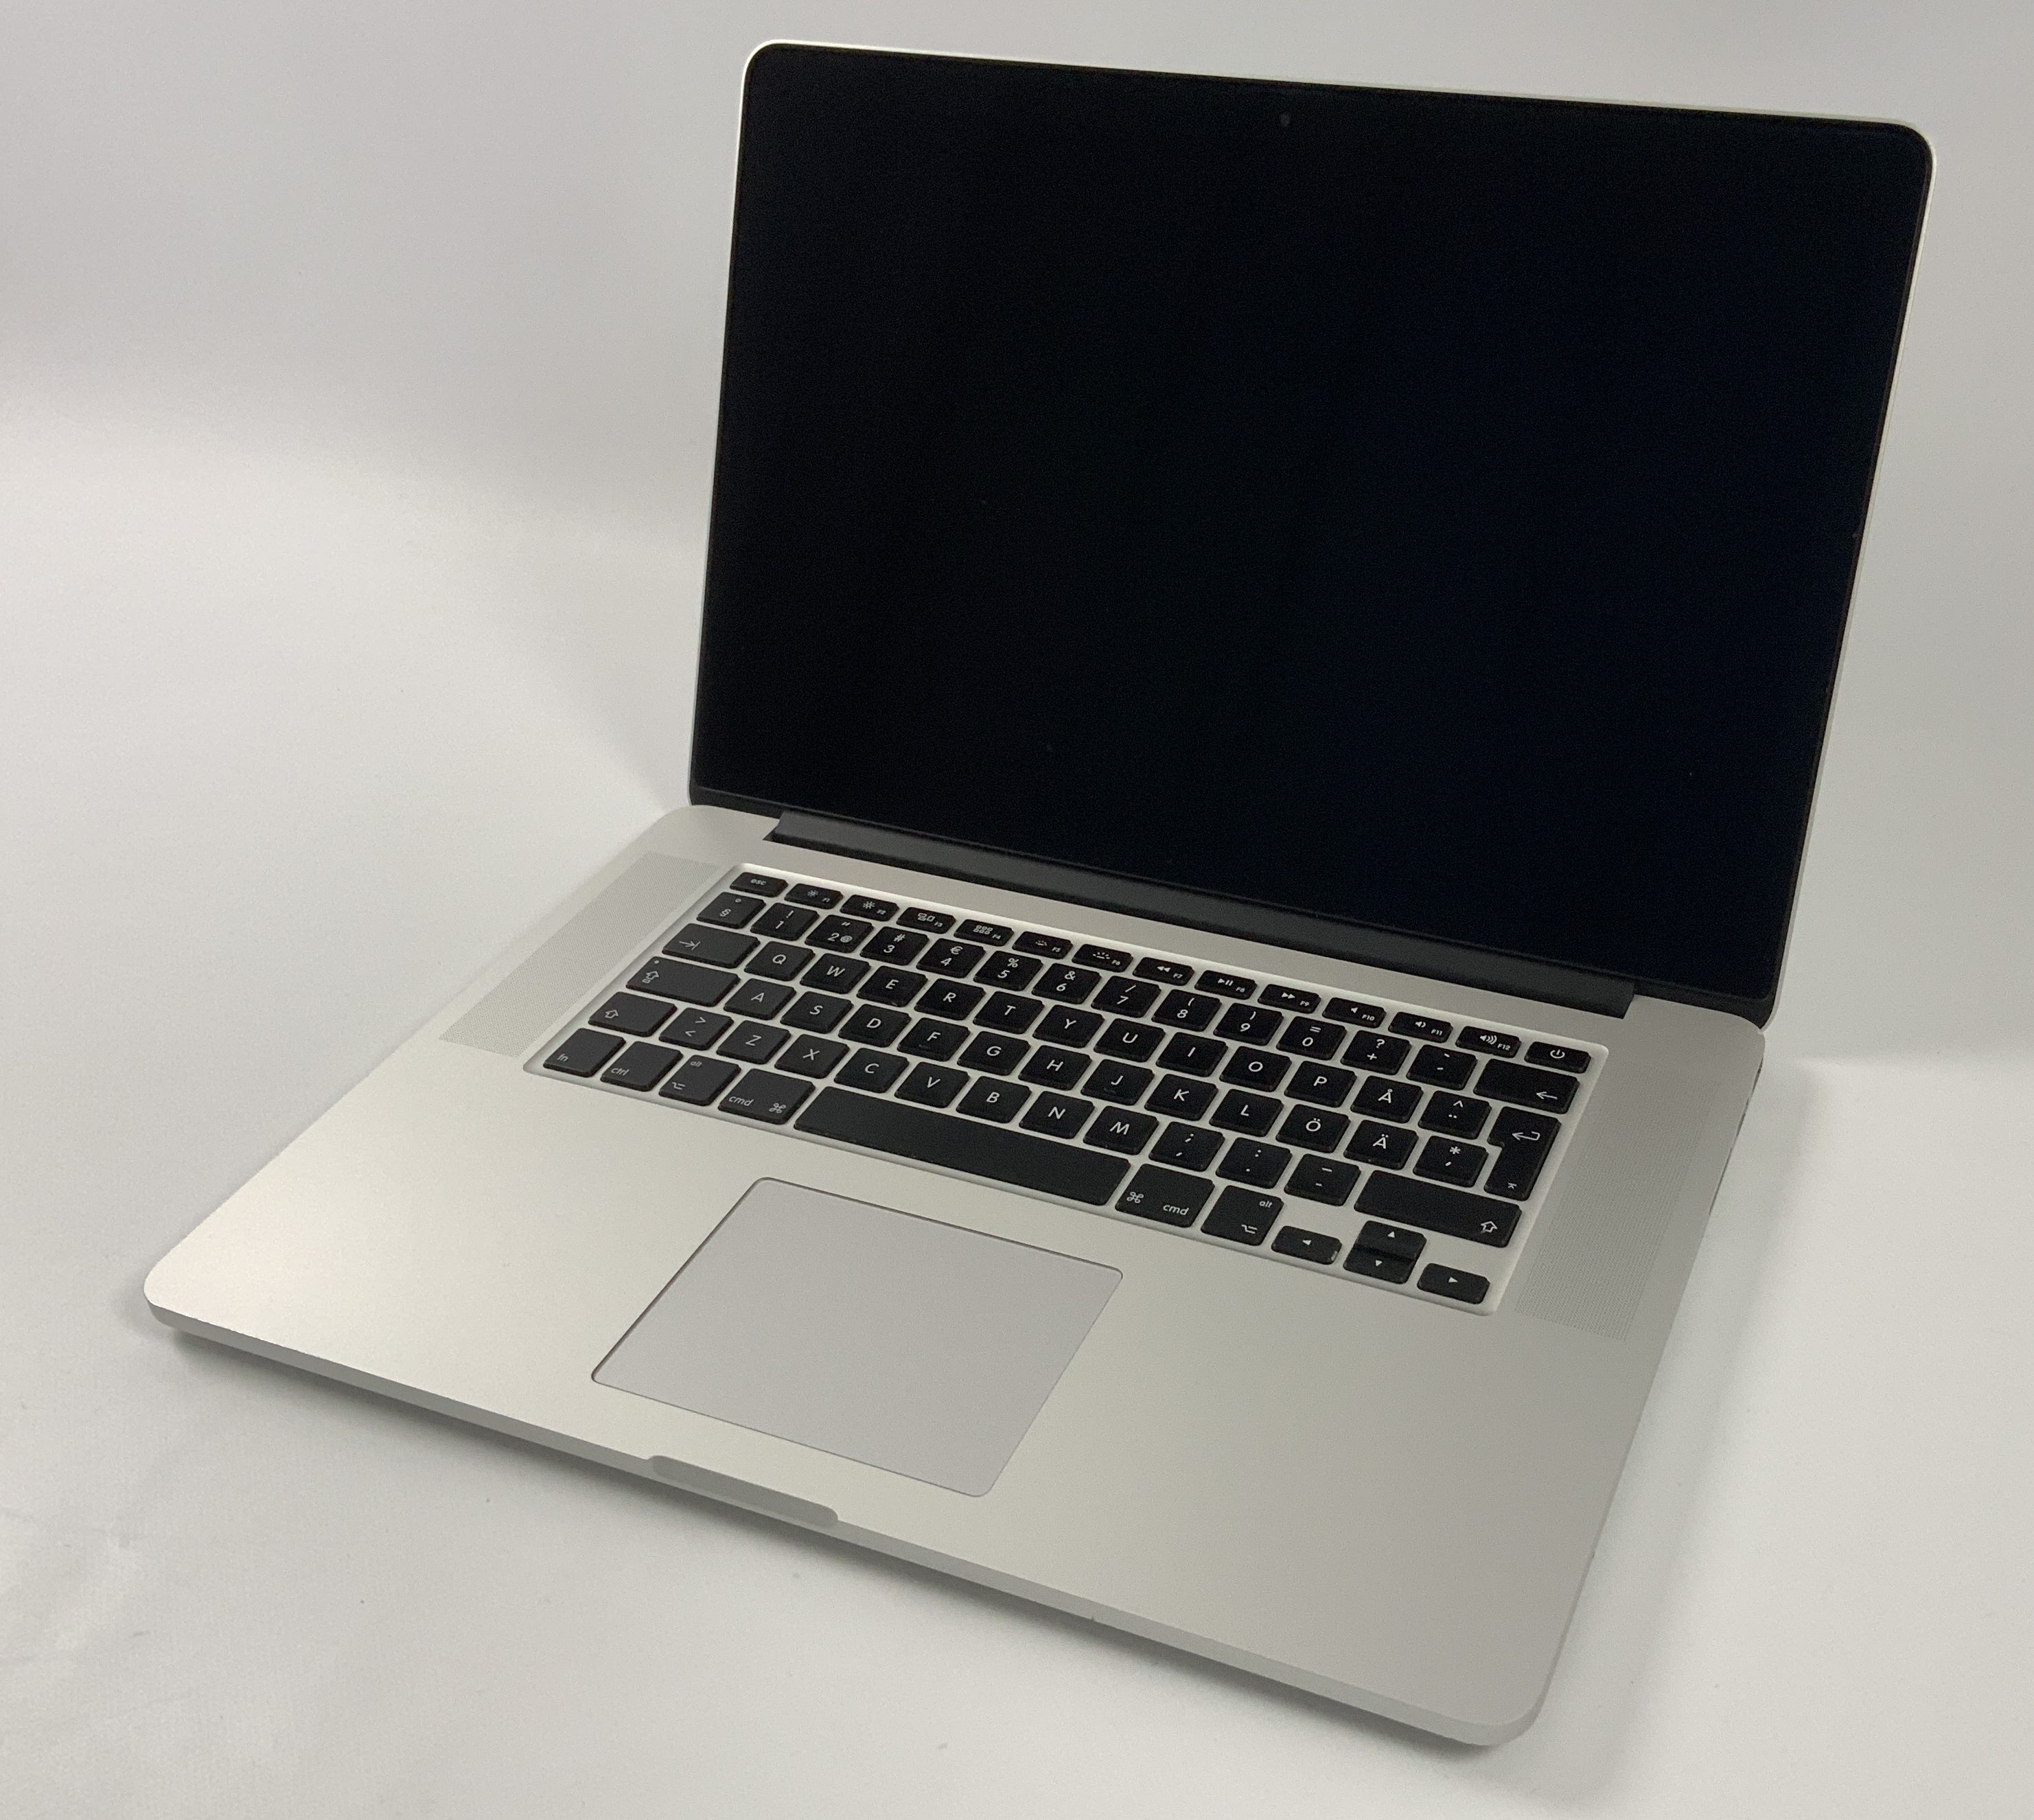 MacBook Pro Retina 15" Mid 2015 (Intel Quad-Core i7 2.5 GHz 16 GB RAM 512 GB SSD), Intel Quad-Core i7 2.5 GHz, 16 GB RAM, 512 GB SSD, image 1